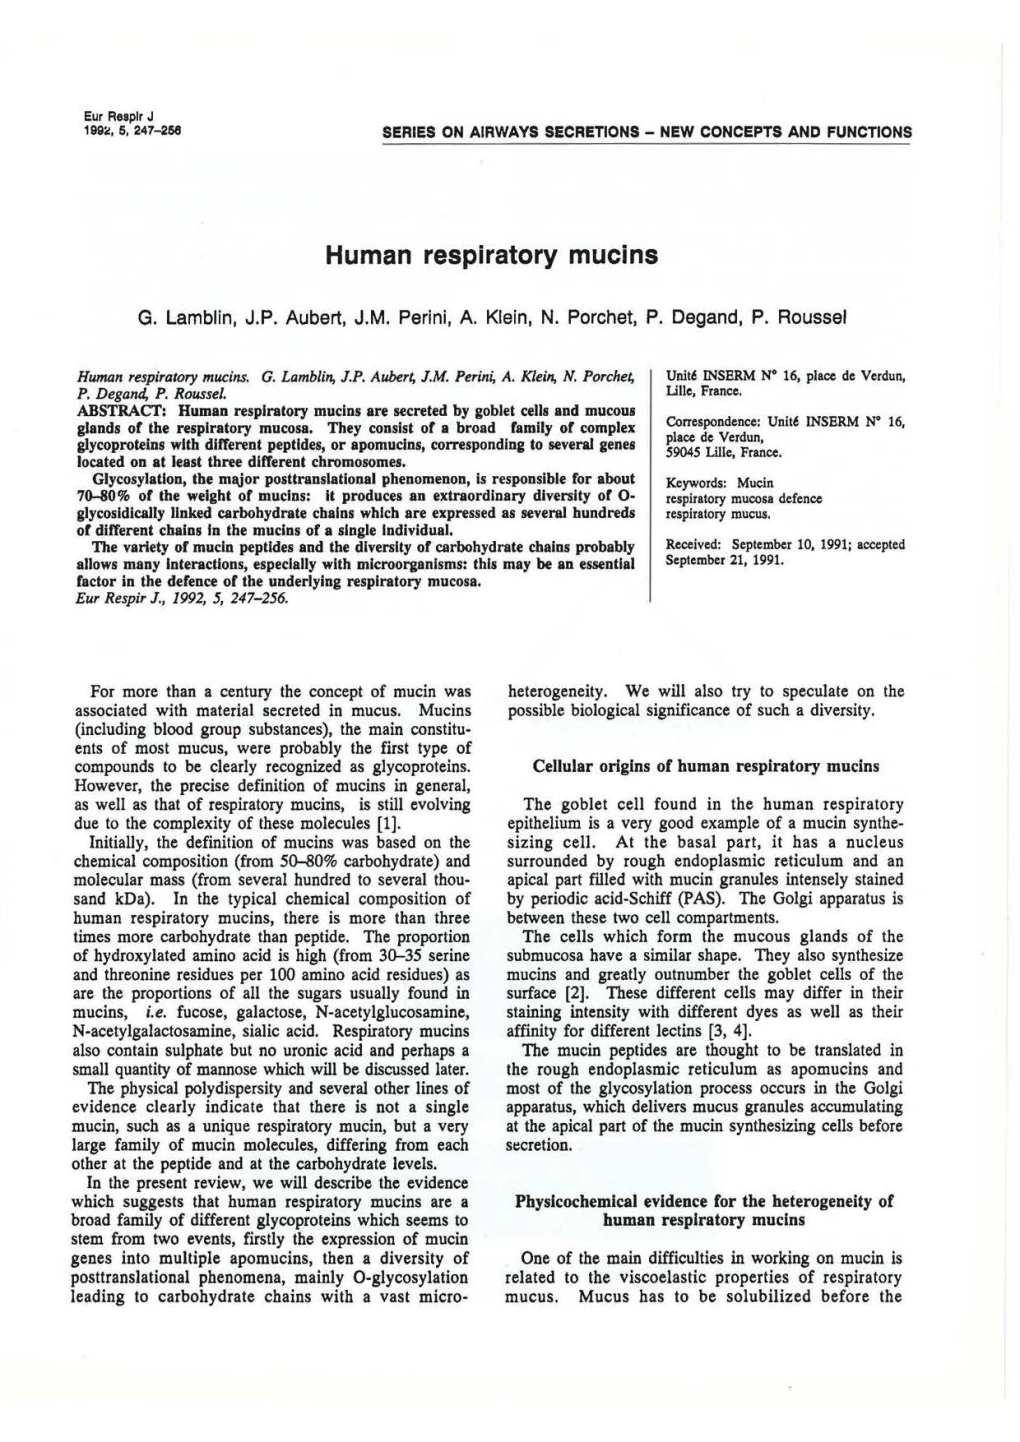 Human Respiratory Mucins